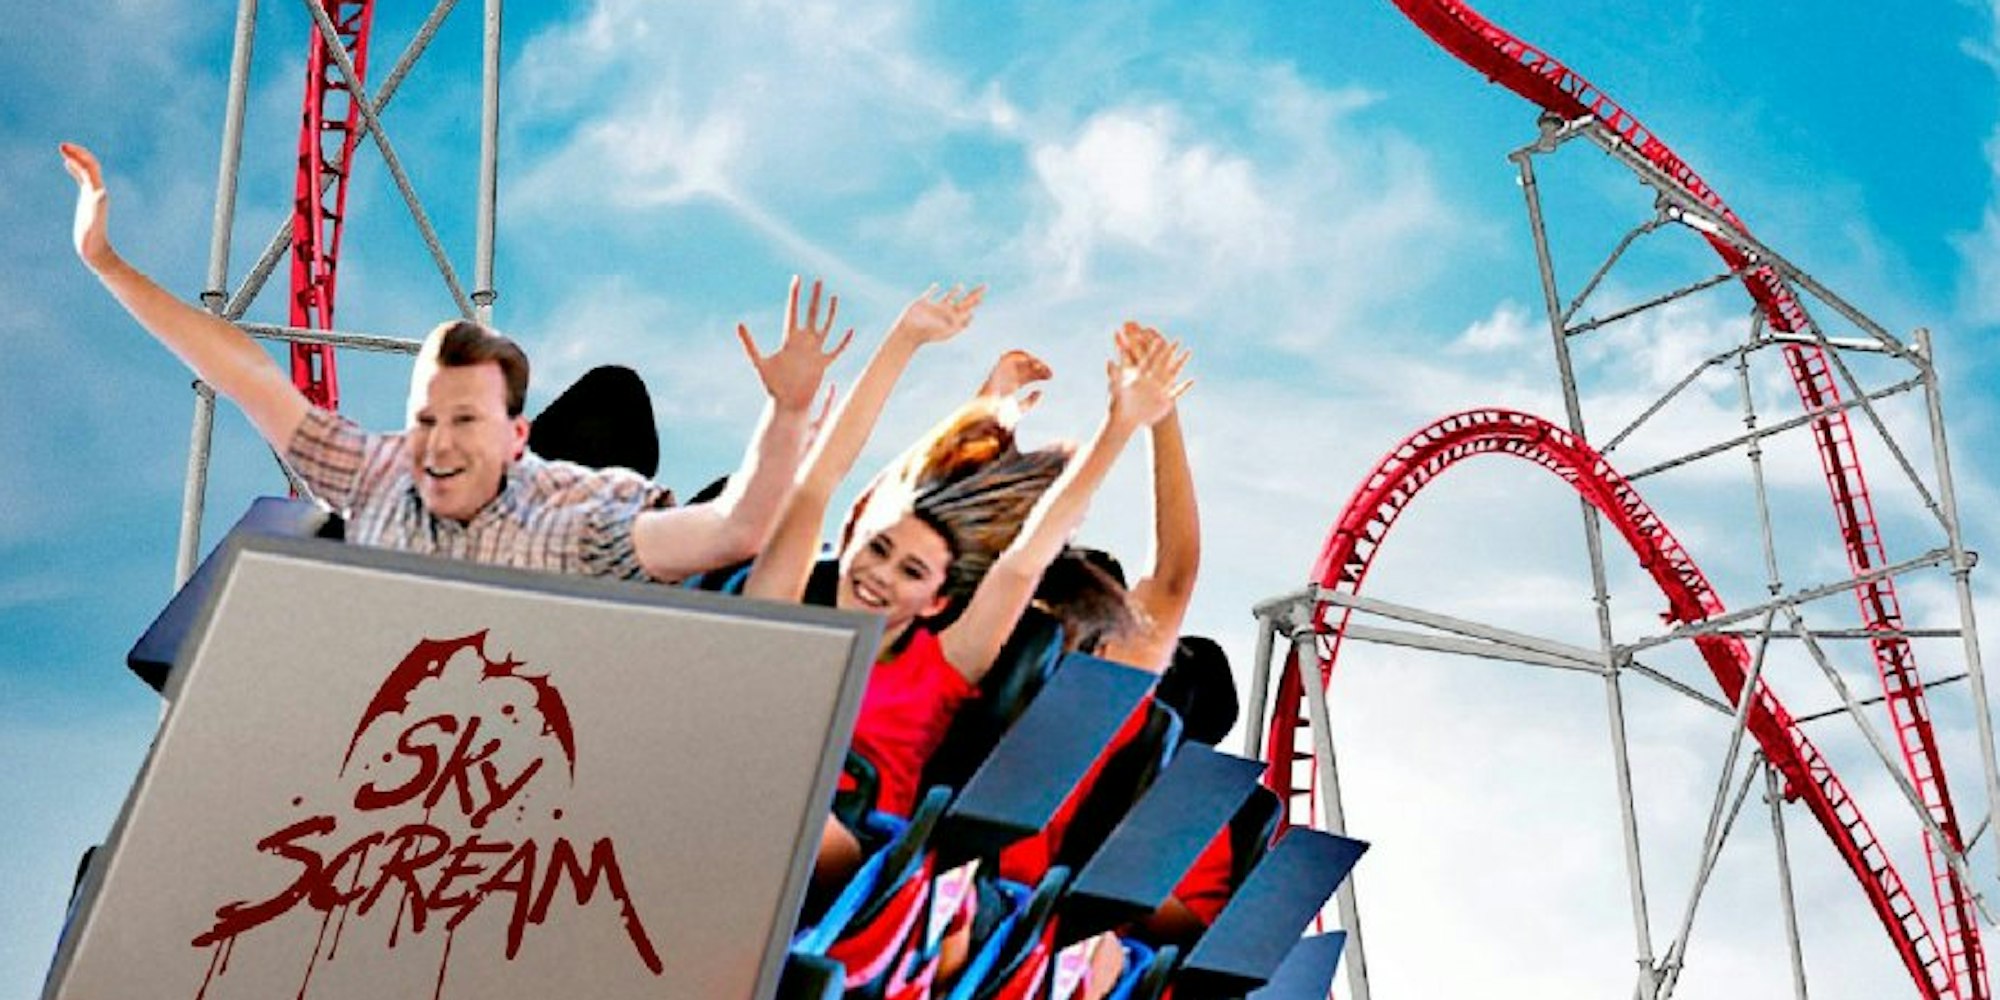 In der Saison 2014 katapultiert der Holiday Park in der Pfalz seine Besucher mit der neue Achterbahn „Sky Scream“ mit bis zu 100 Kilometern pro Stunde durch die Luft.